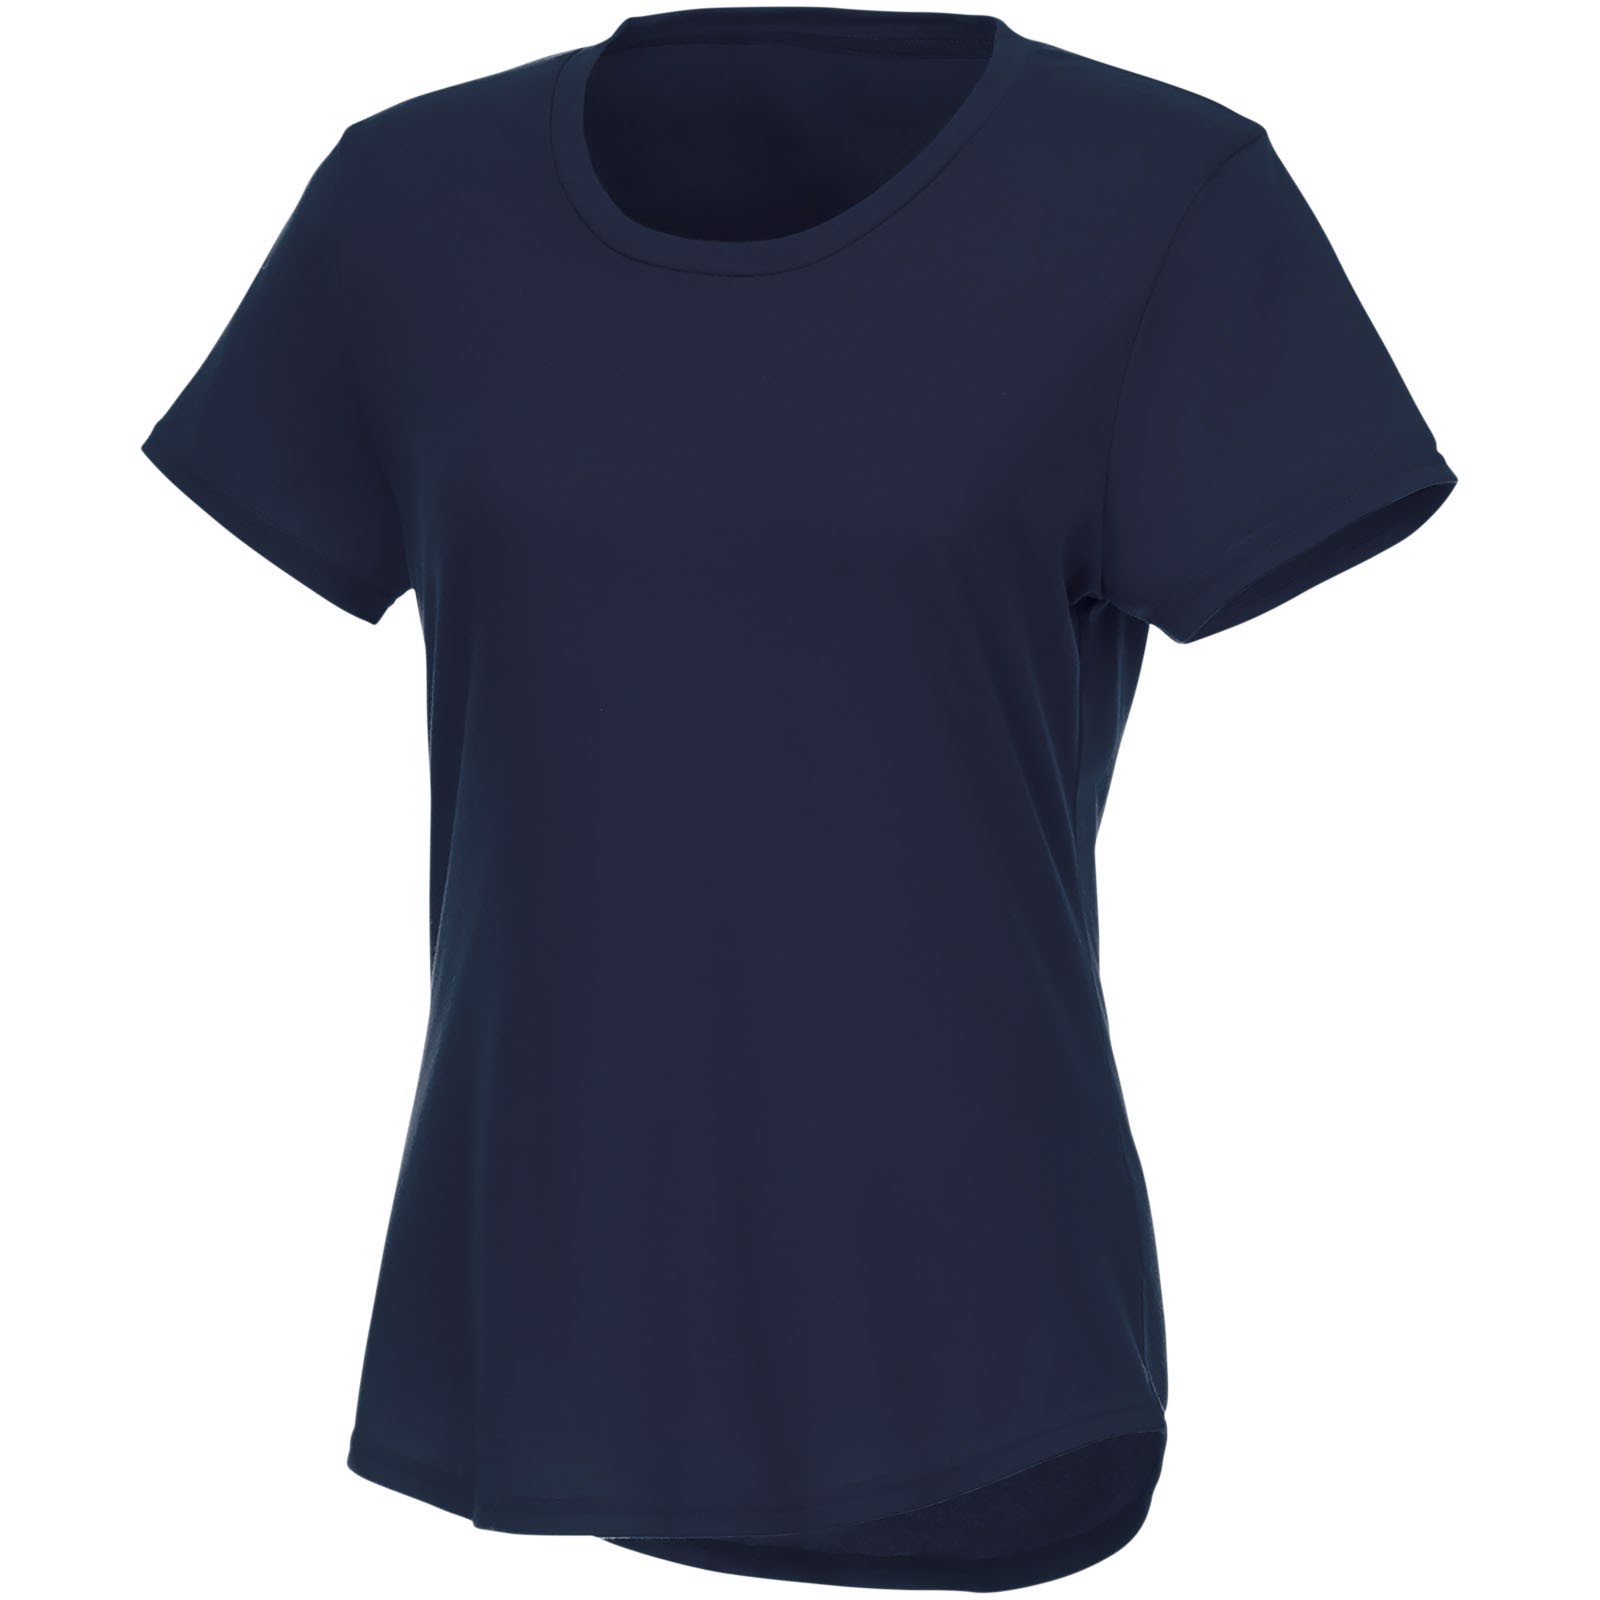 Camiseta de manga corta de material reciclado GRS para mujer "Jade" - Azul marino / L